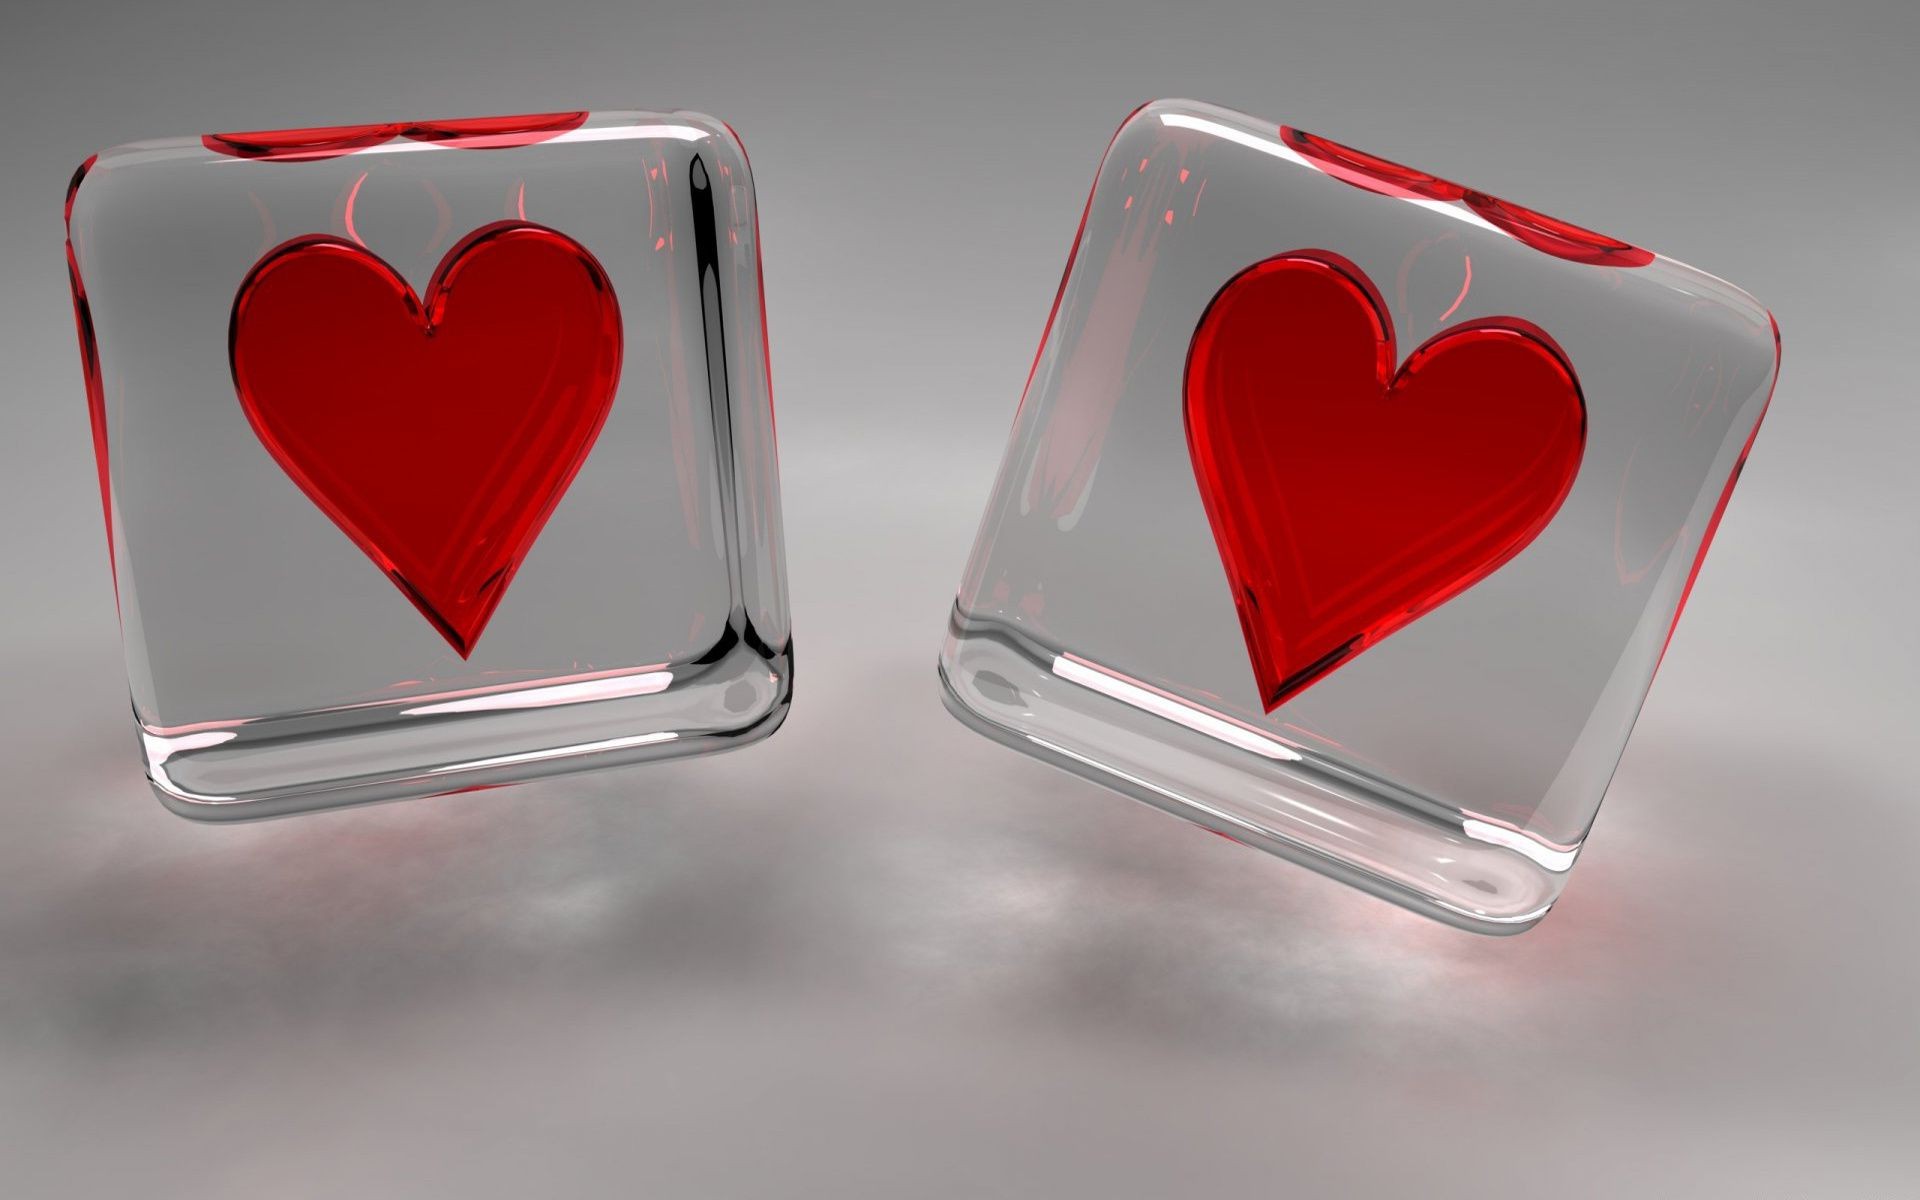 день святого валентина романтика сердце любовь символ брак формы романтический отражение стекло свадьба остекленные хром светит любовь изображения дело милая